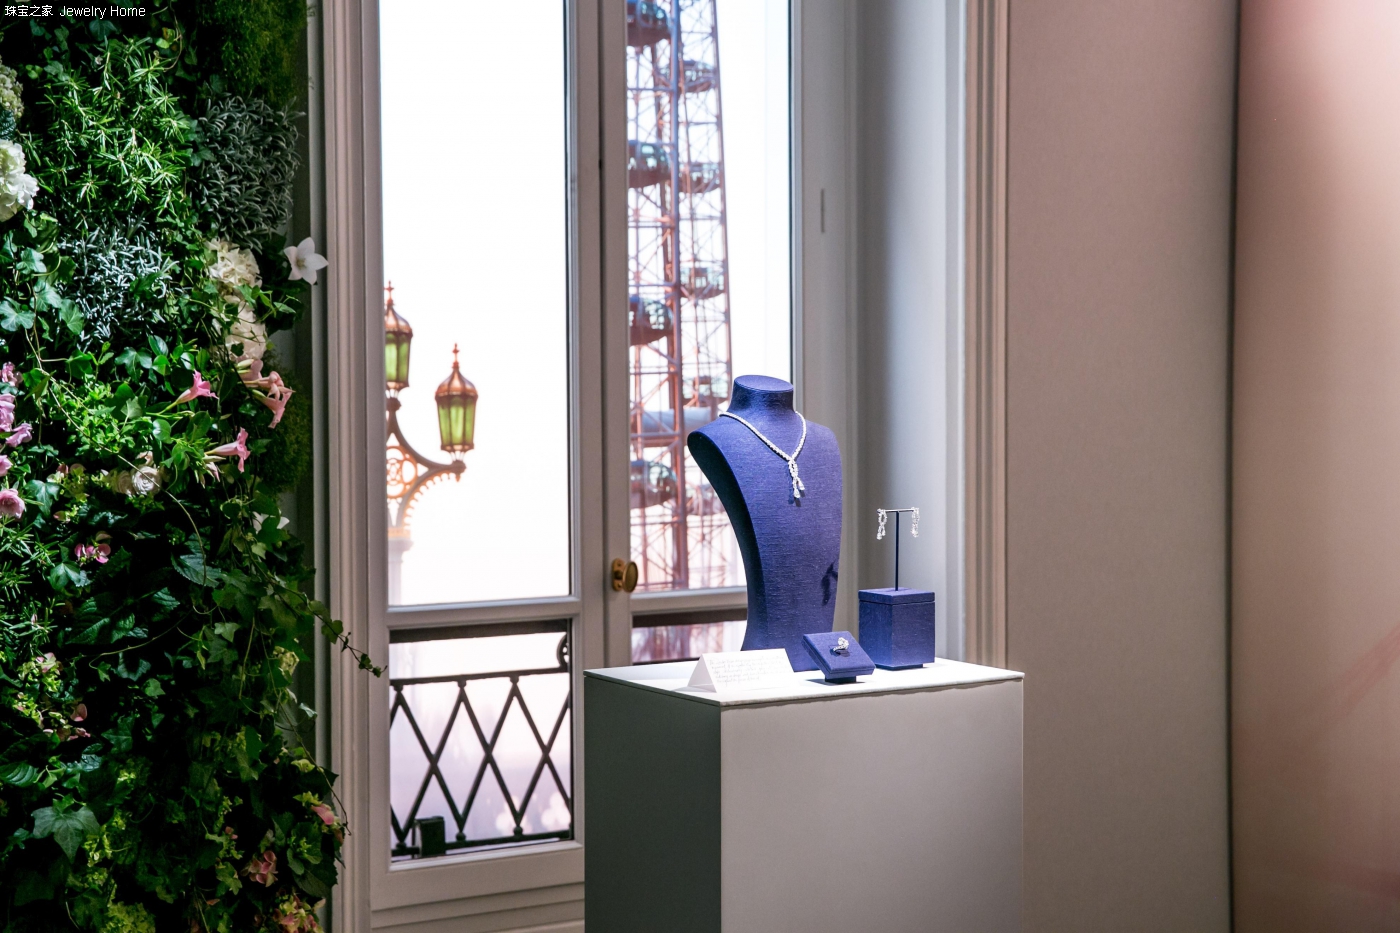 戴比尔斯全新 London by De Beers伦敦印象系列高级珠宝 于巴黎揭开神秘面纱